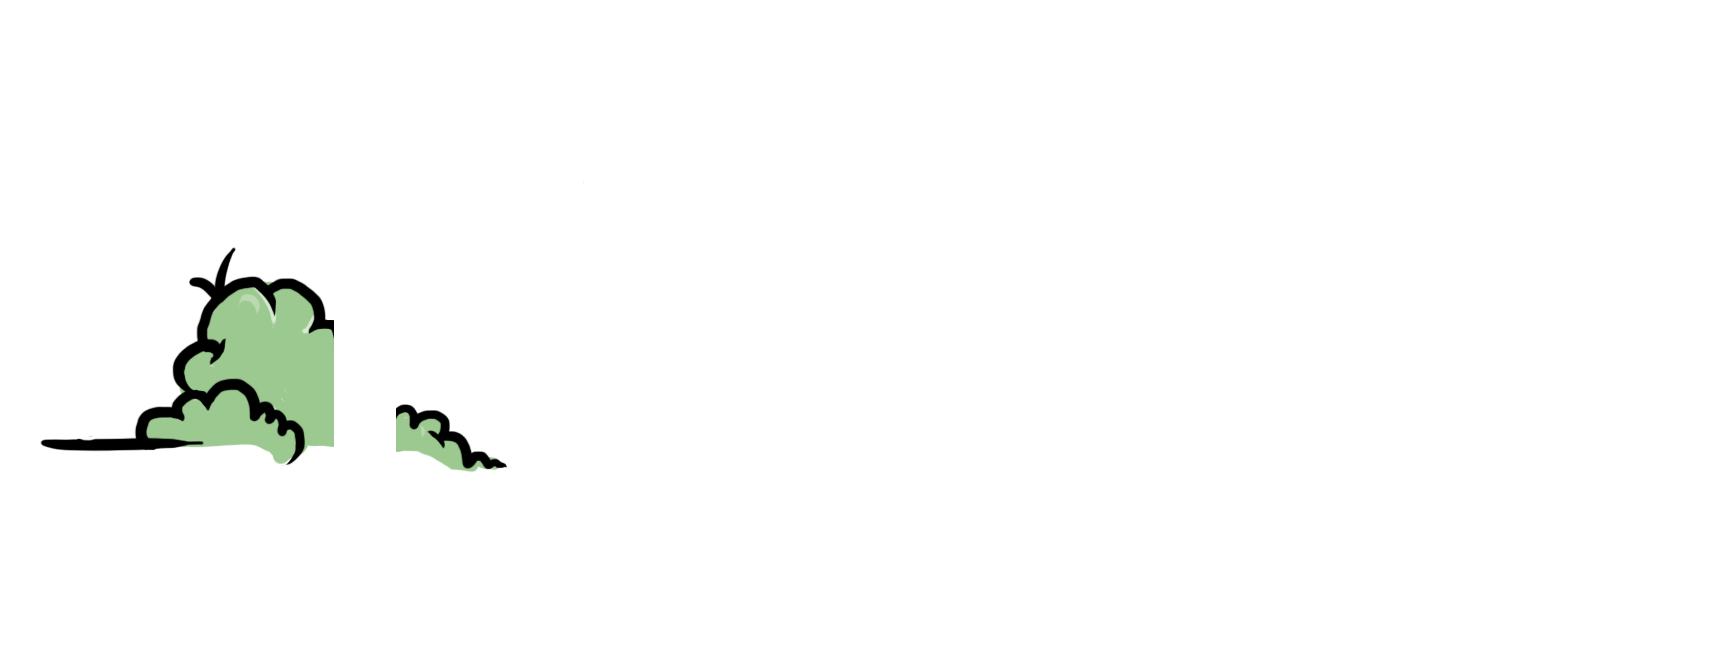 Kroftle studios